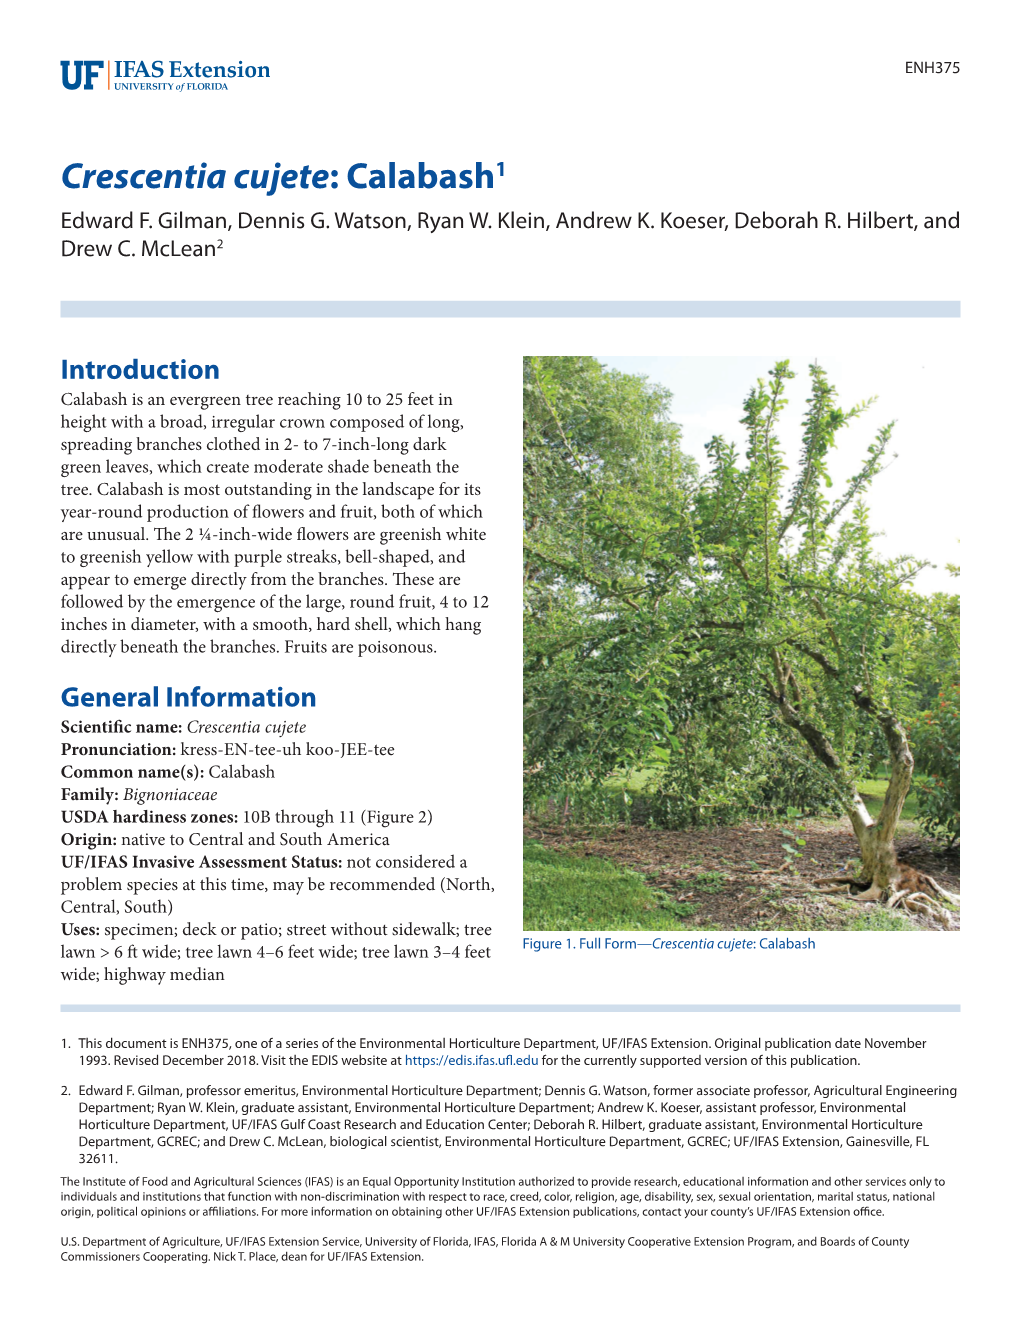 Crescentia Cujete: Calabash1 Edward F